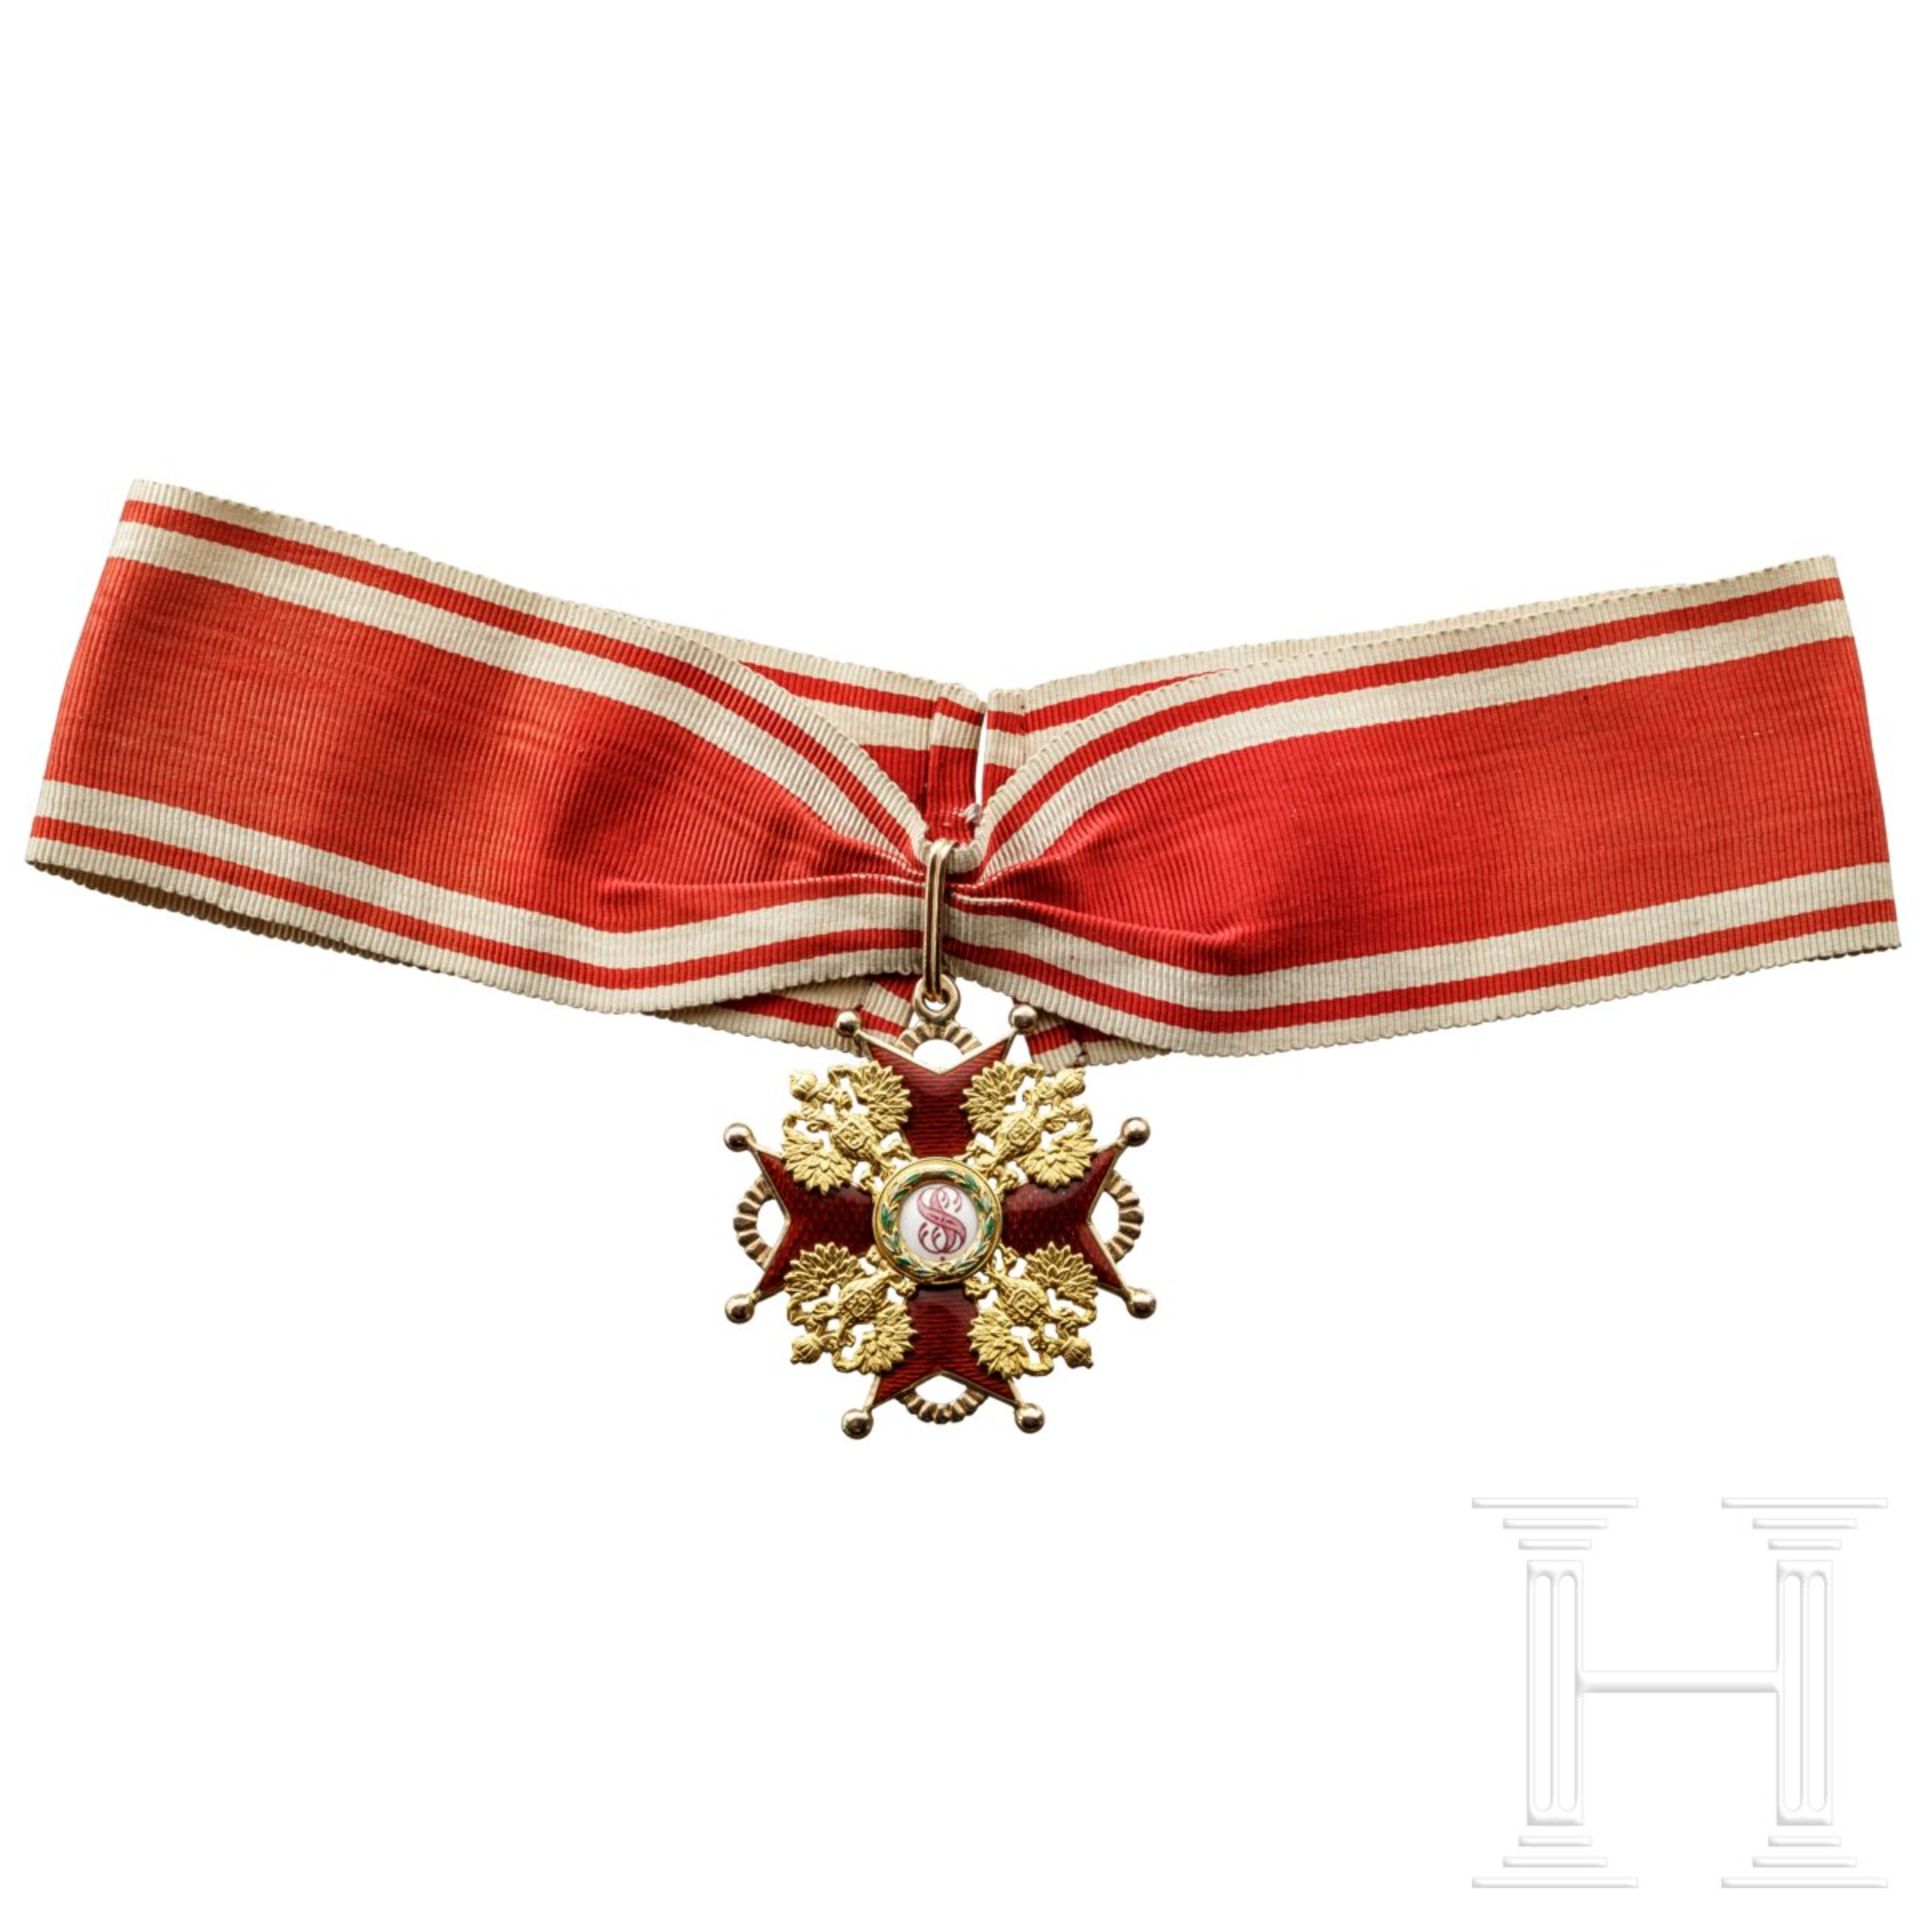 St. Stanislaus-Orden, Kreuz 2. Klasse, Russland, um 1910